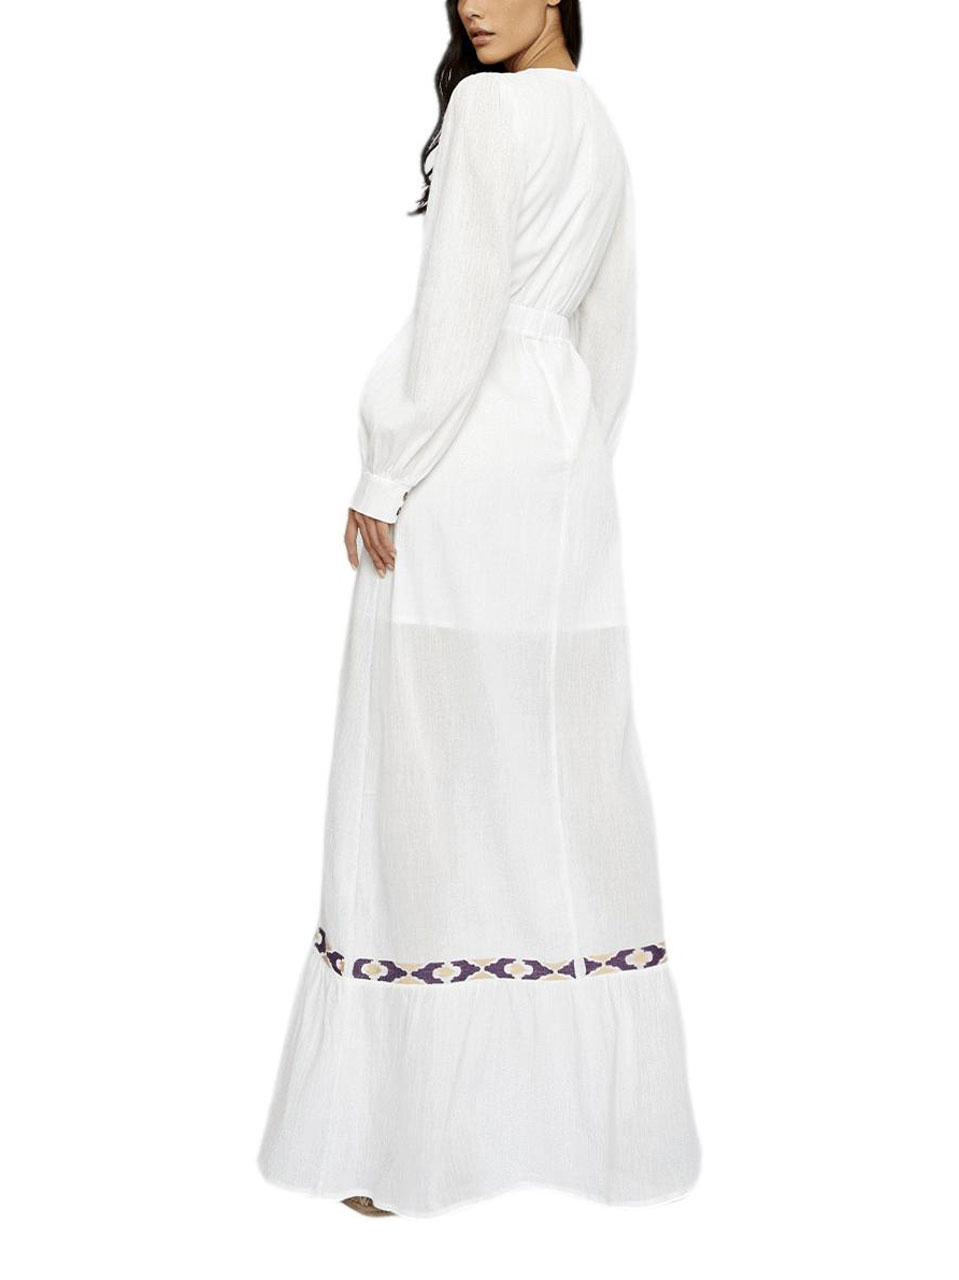 Glamorous Maxi White Dress